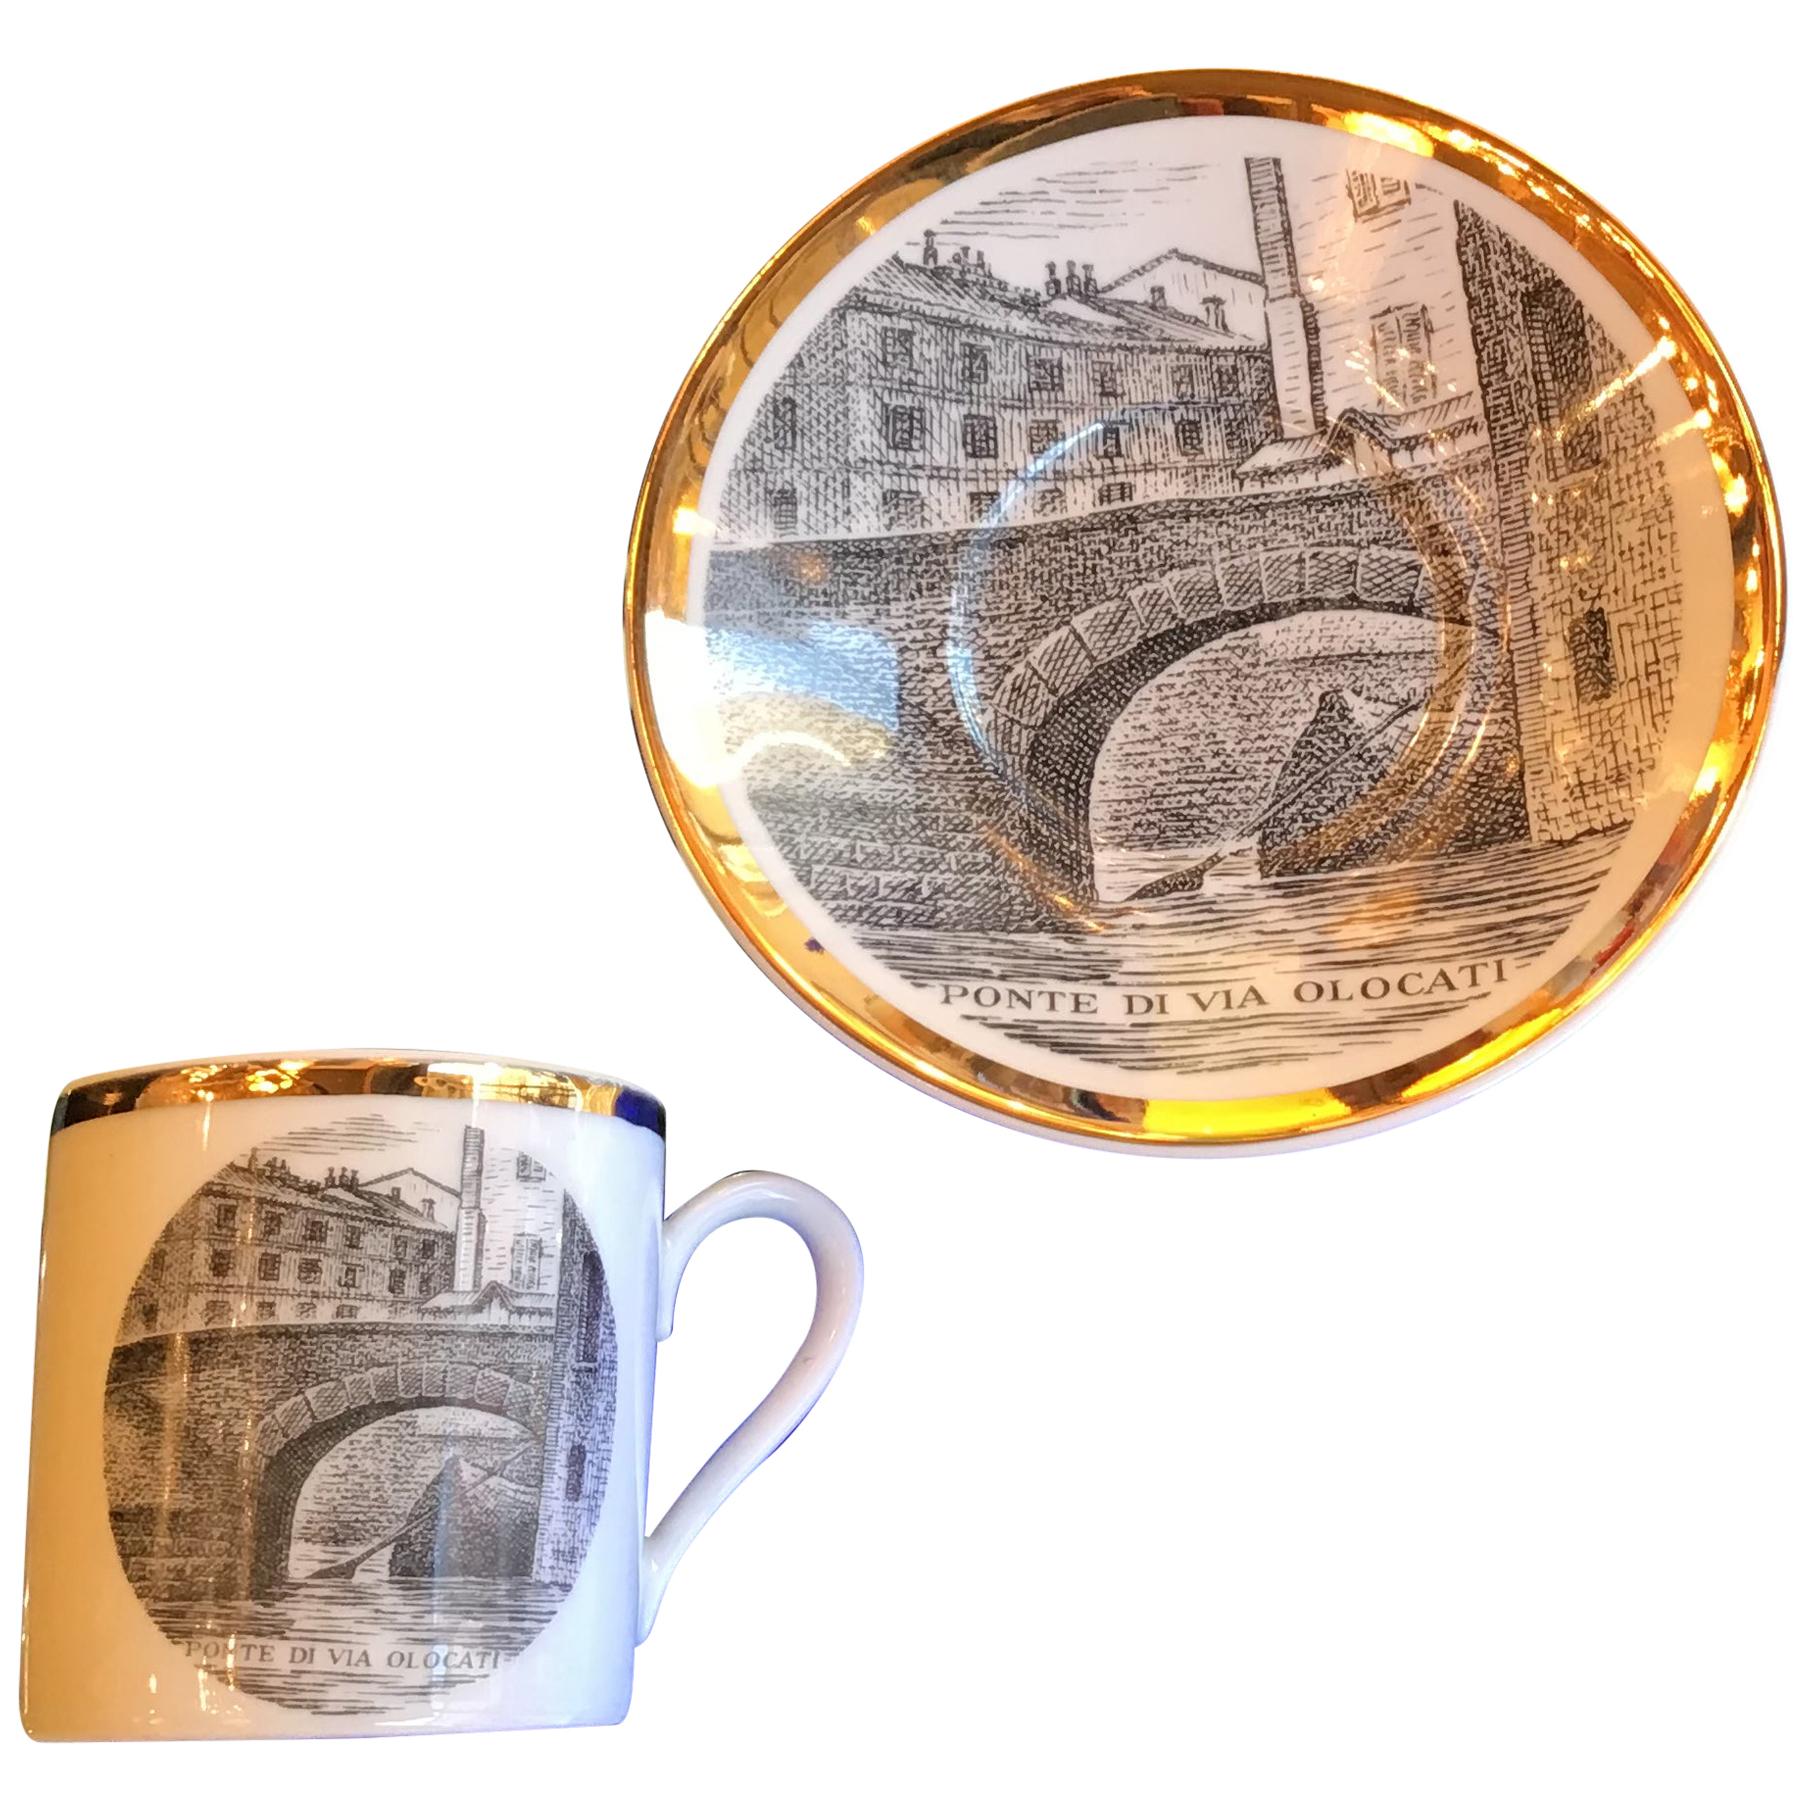 Fornasetti Porcelain Coffee Cup 1950 “Ponte Di Via Olona” Milano